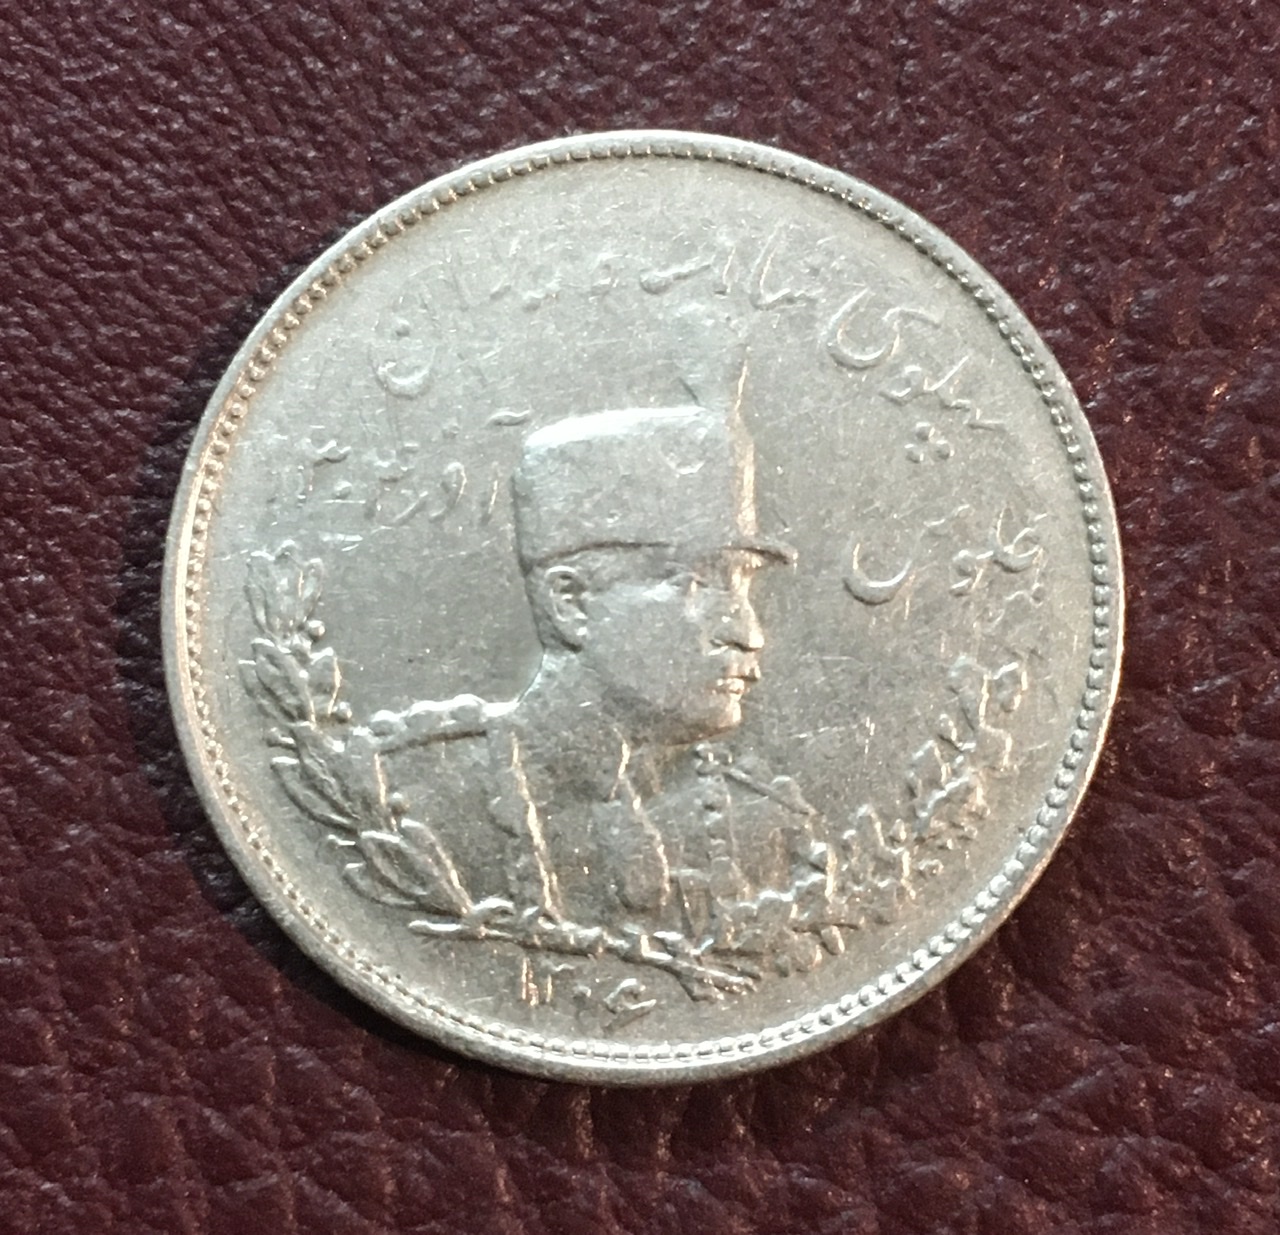 سکه نقره دوهزار دینار تصویری ١٣٠۶ رضا شاه ضرب طهران کمیاب